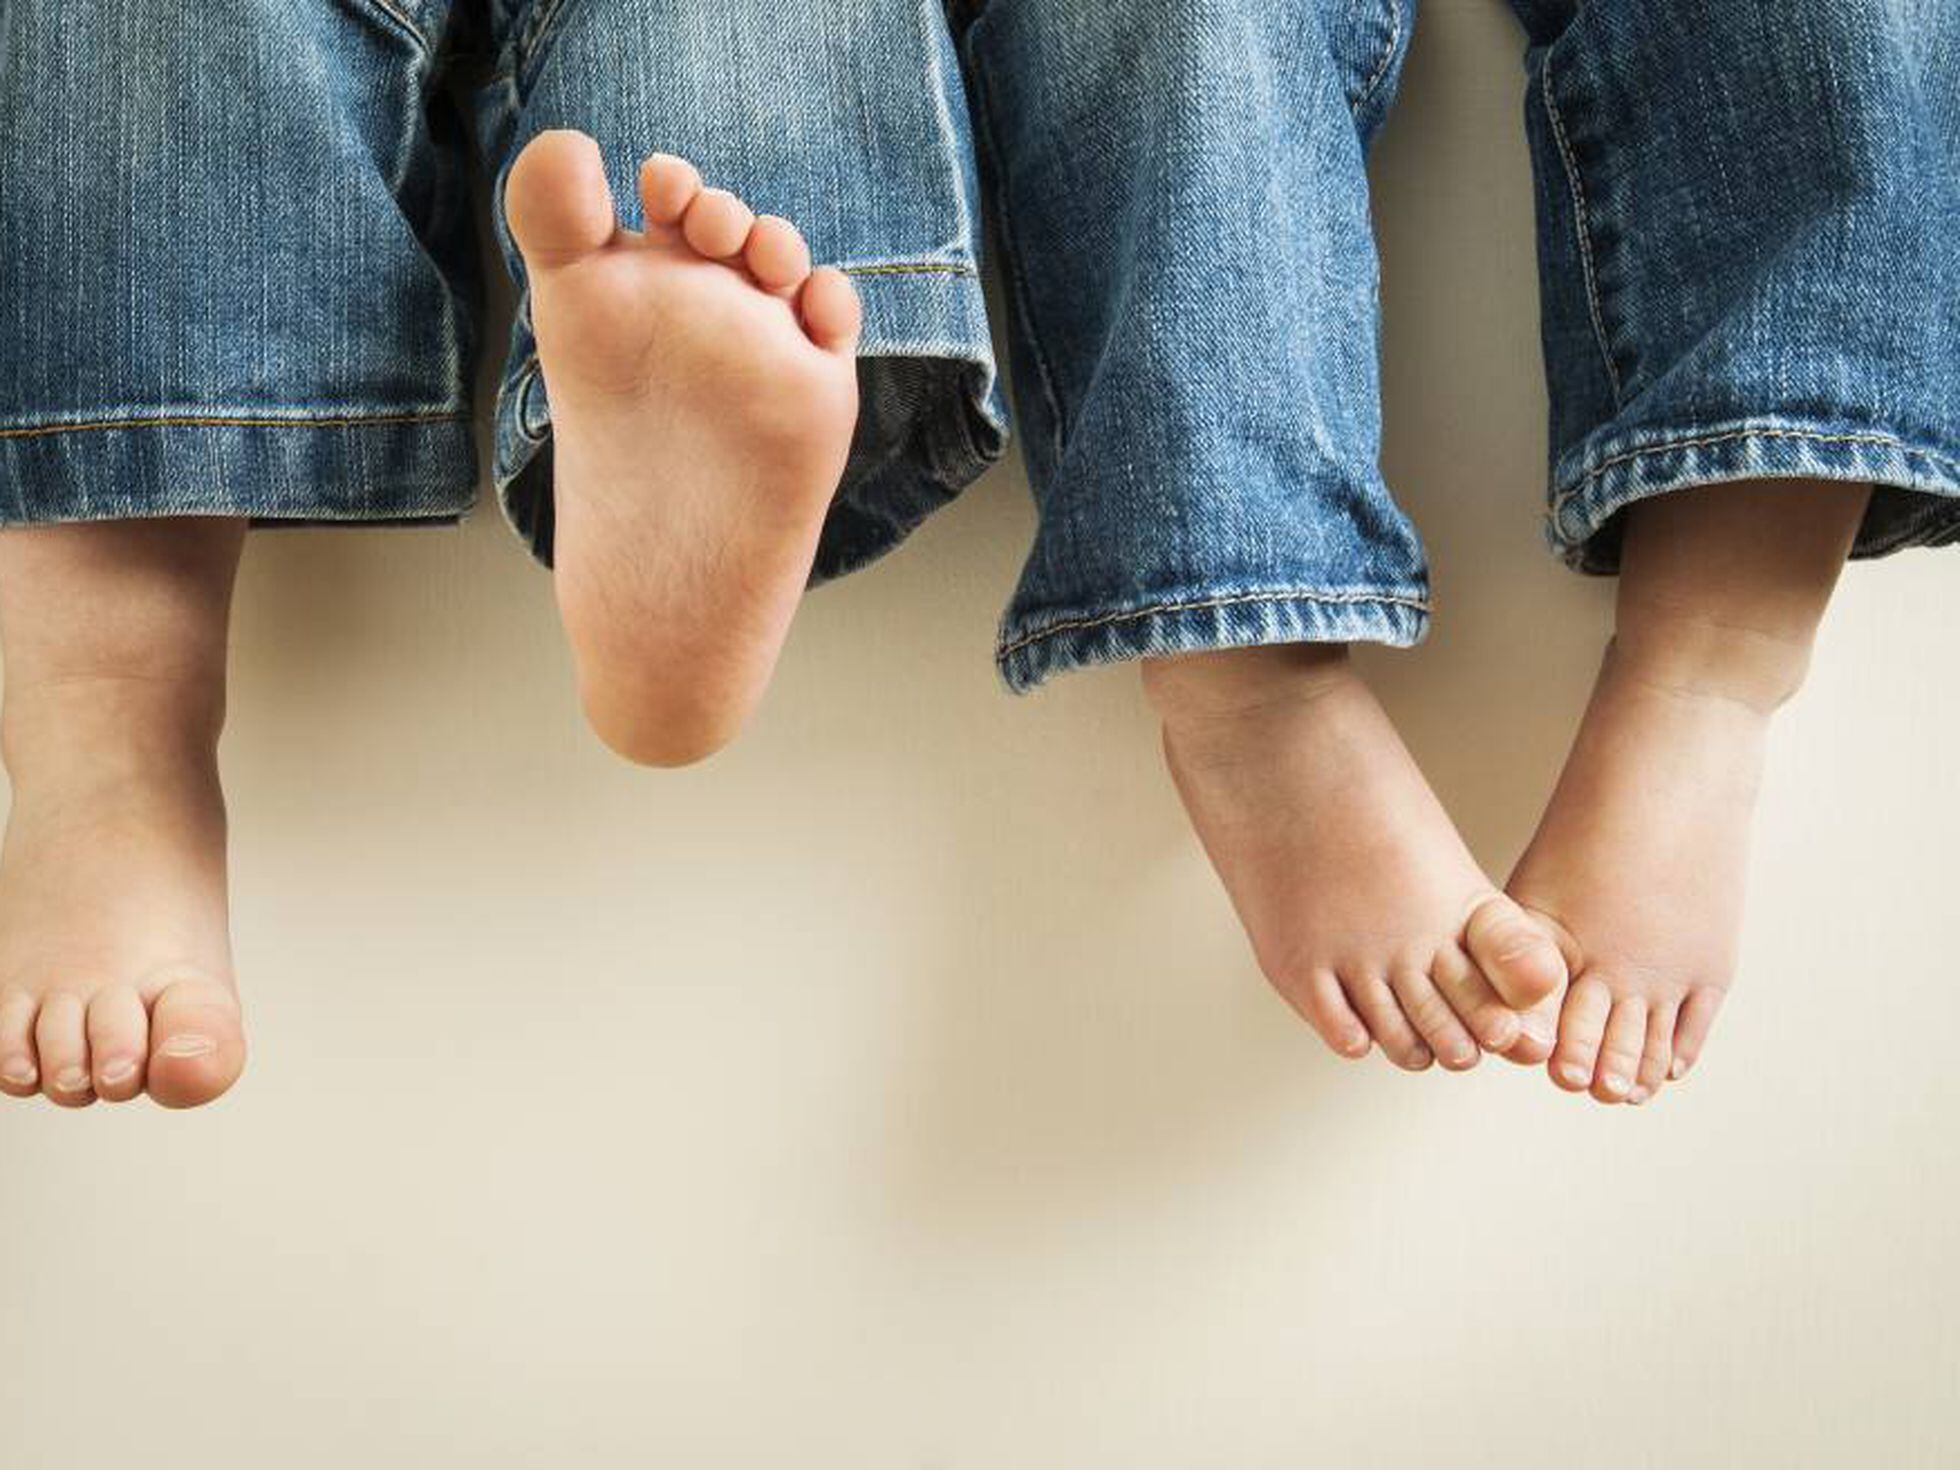 Andar descalzo, tipo de calzado y otros mitos en torno a pies de los niños | Mamas & Papas | EL PAÍS